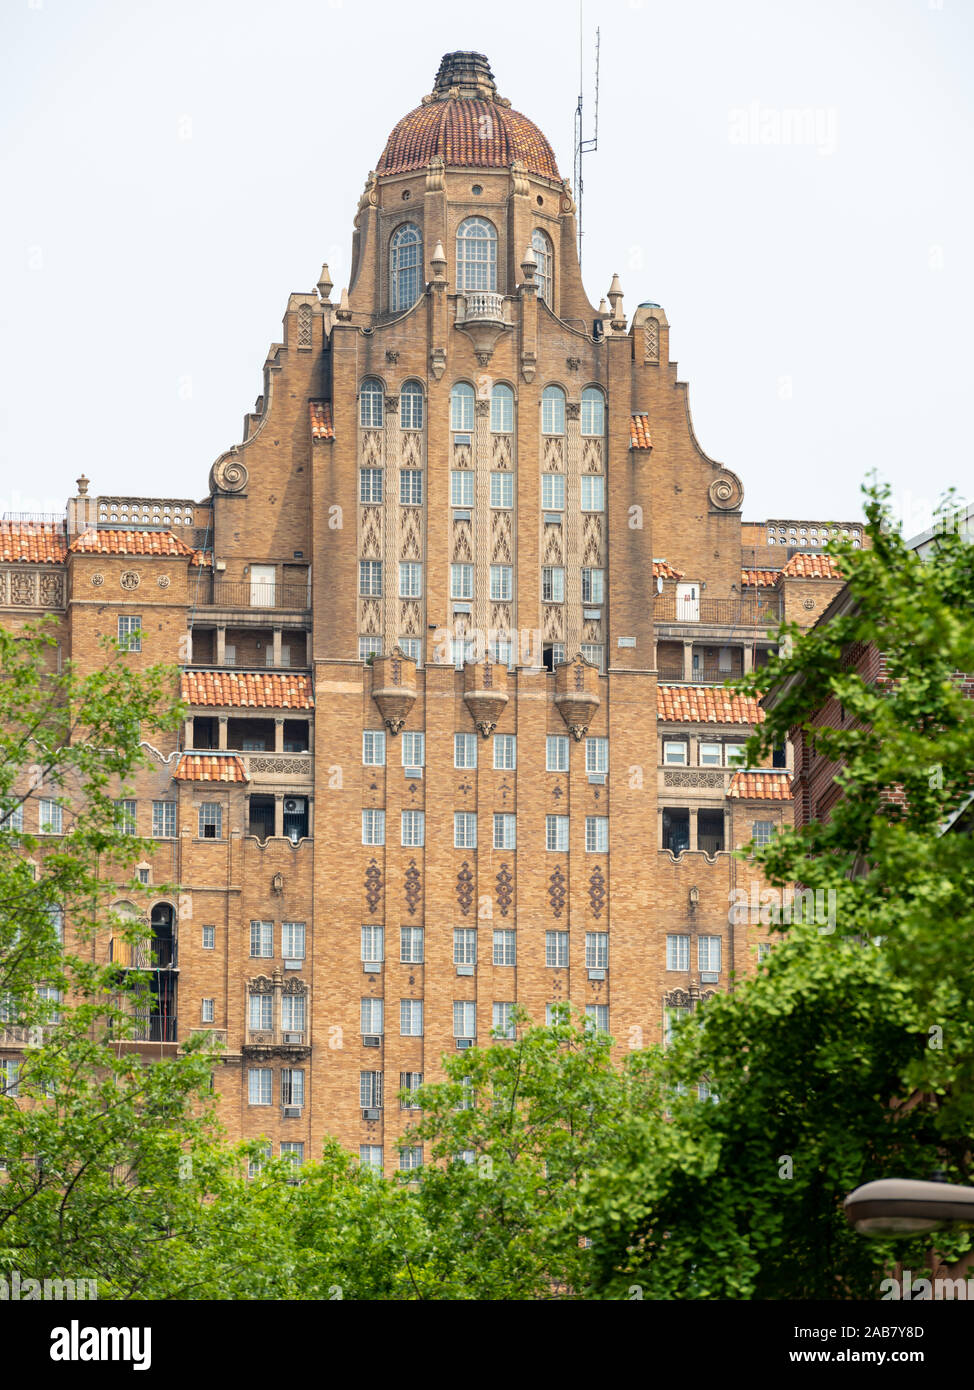 Un dôme en terre cuite art déco en tête de l'hôtel Drake à Spruce Street, Philadelphie. Conçu en 1928 par Ritter et Shay avec ornementation Espagnol Banque D'Images